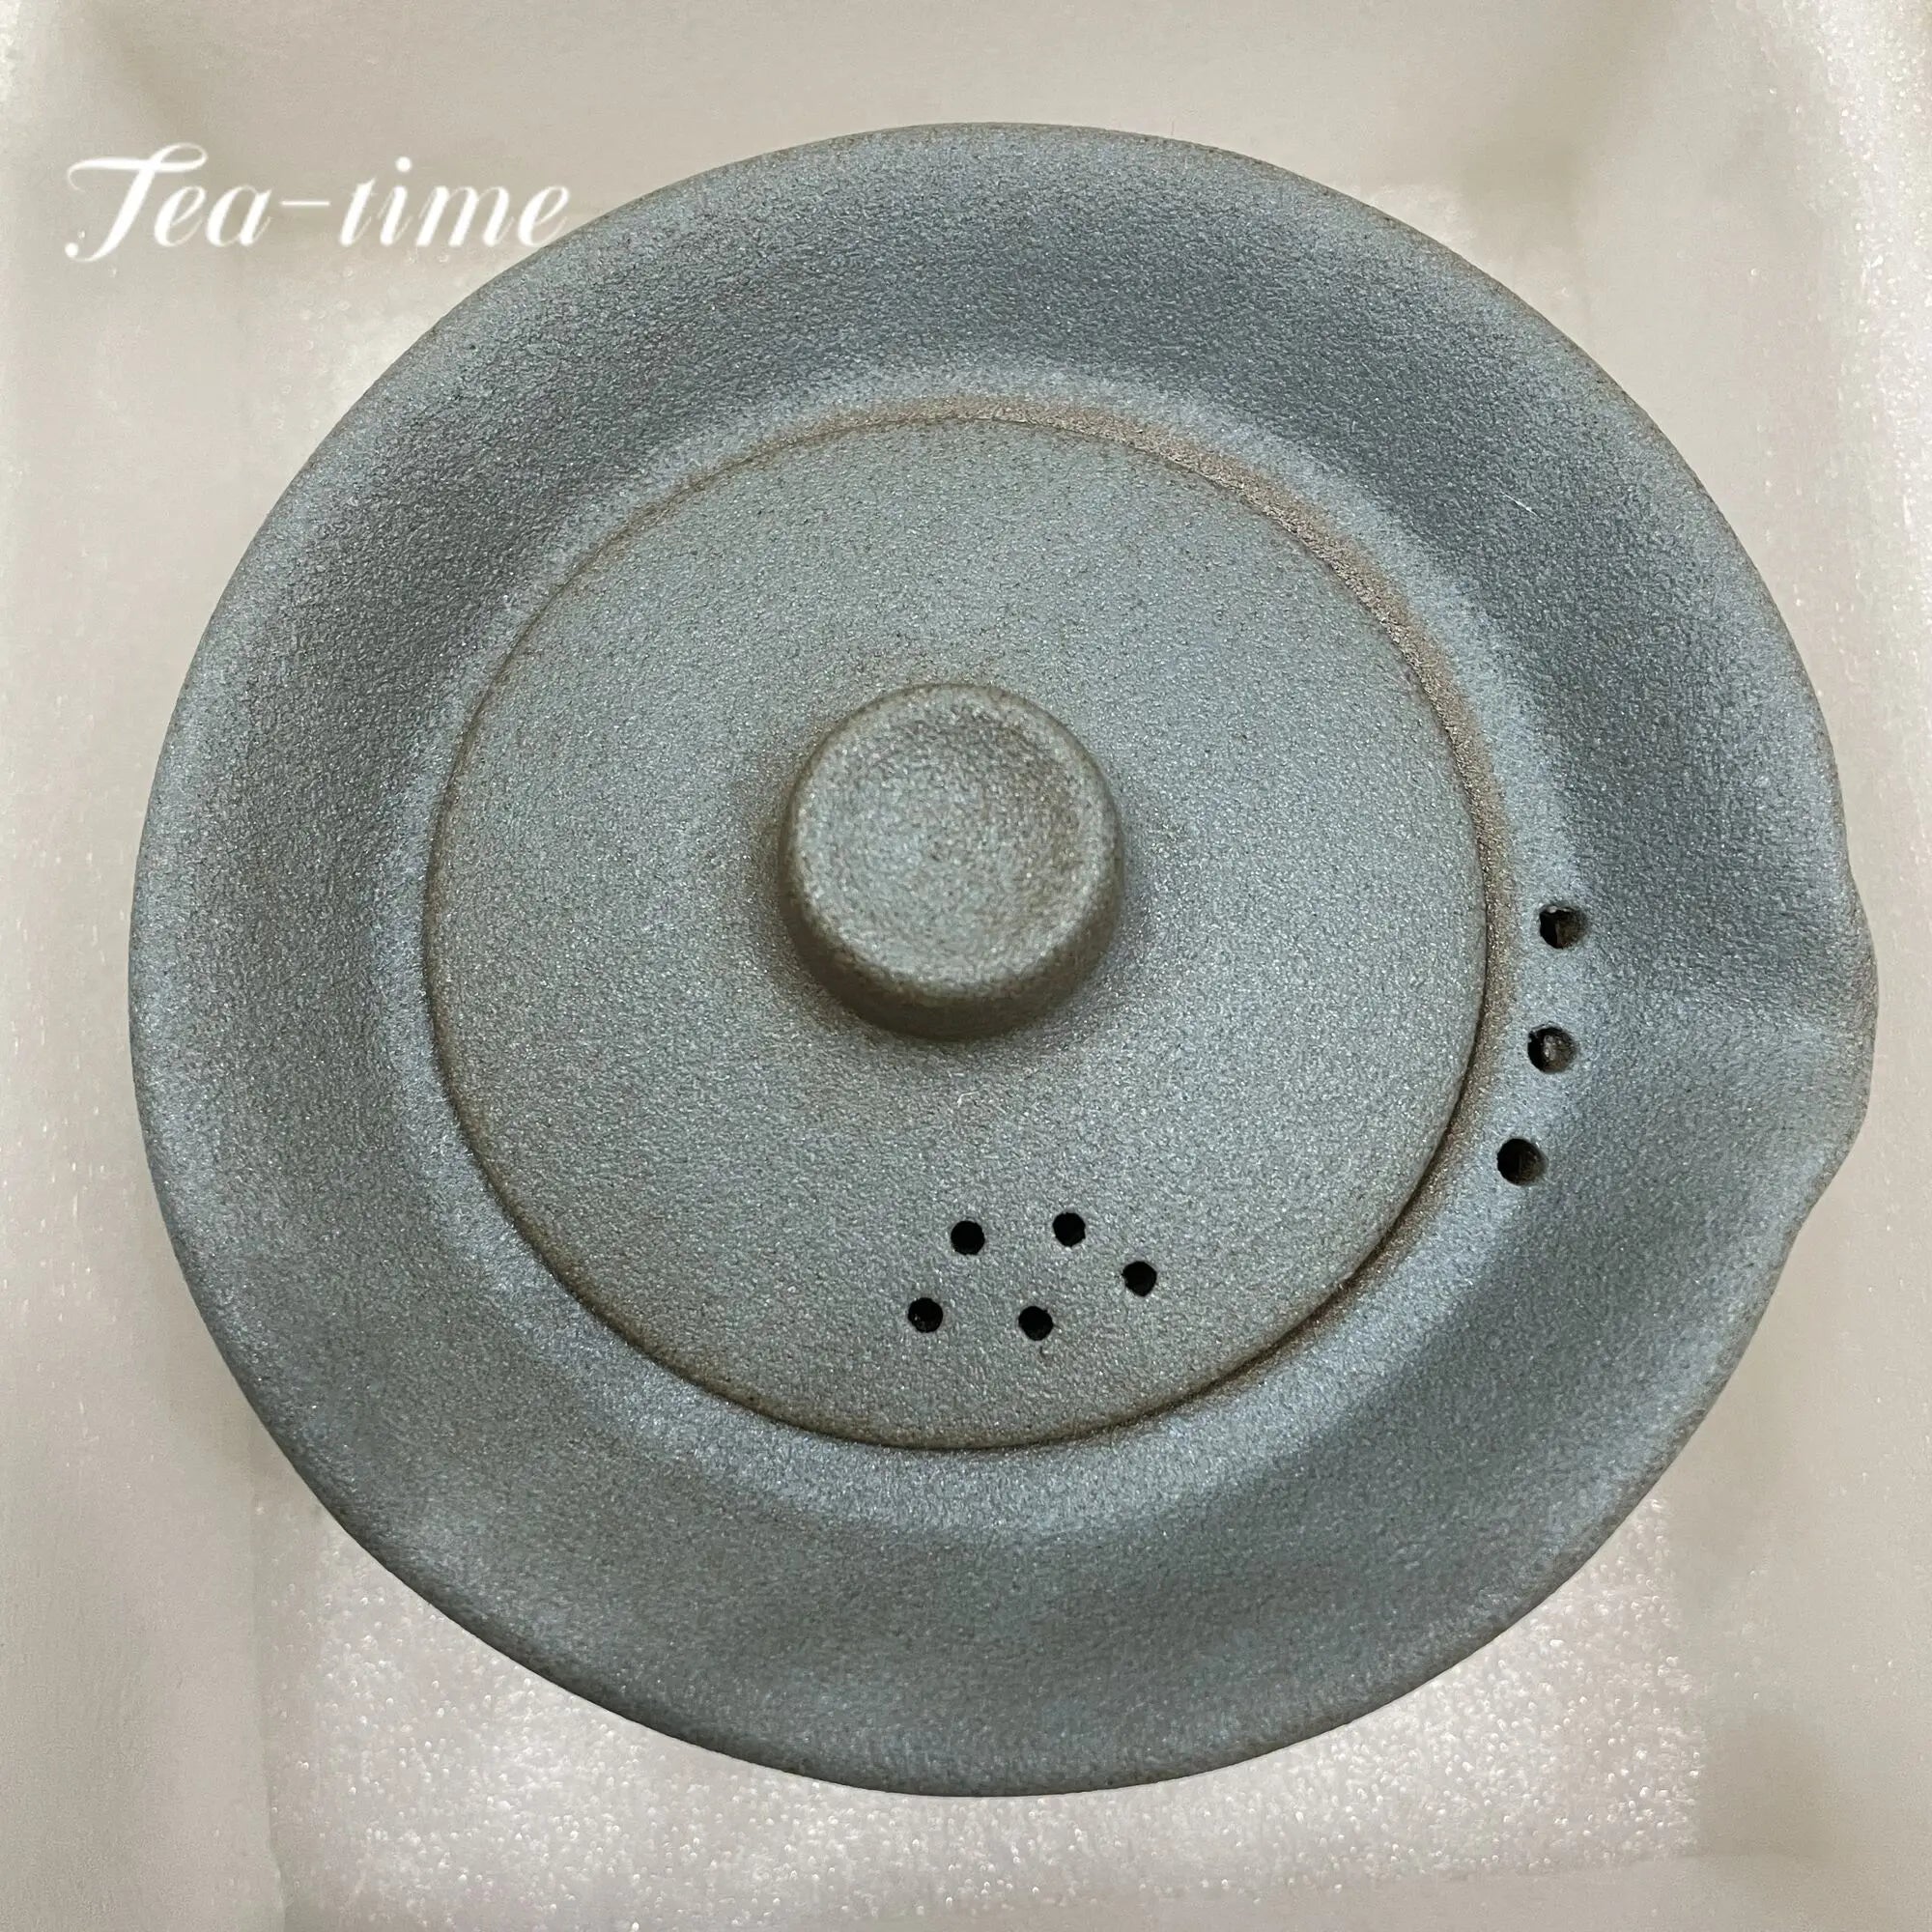 200 ml japanische Keramik -Teekanne Kessel Tee Making Gaiwan Tee Tasse für Puer 1 Schüssel 2 Tassen Tee Set Retro Rohpotterie Getränkware